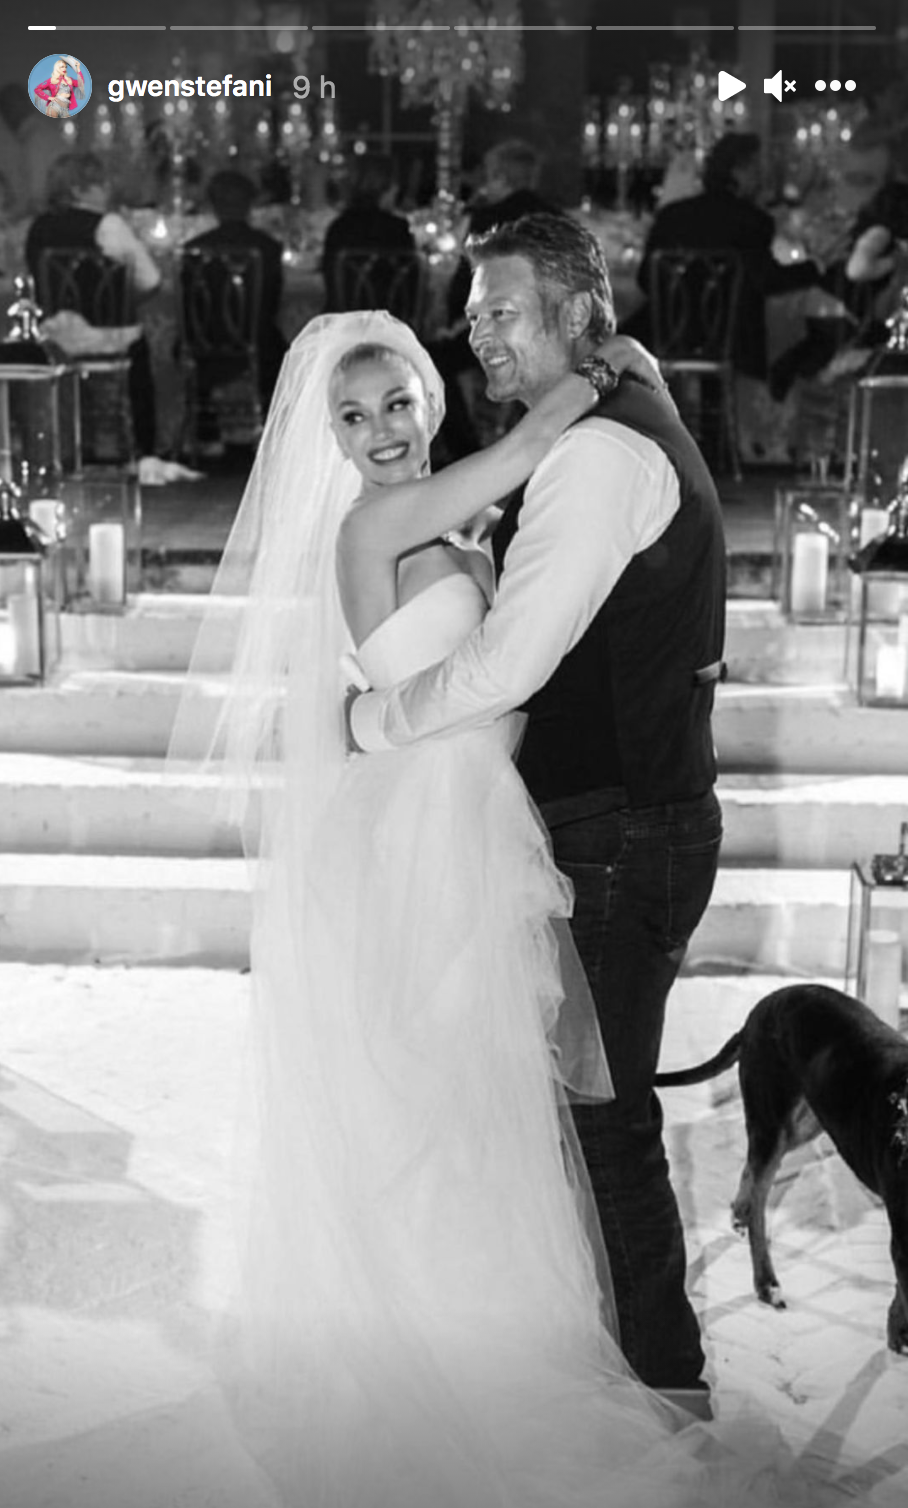 Gwen Stefani Shares Blake Shelton Wedding Photos